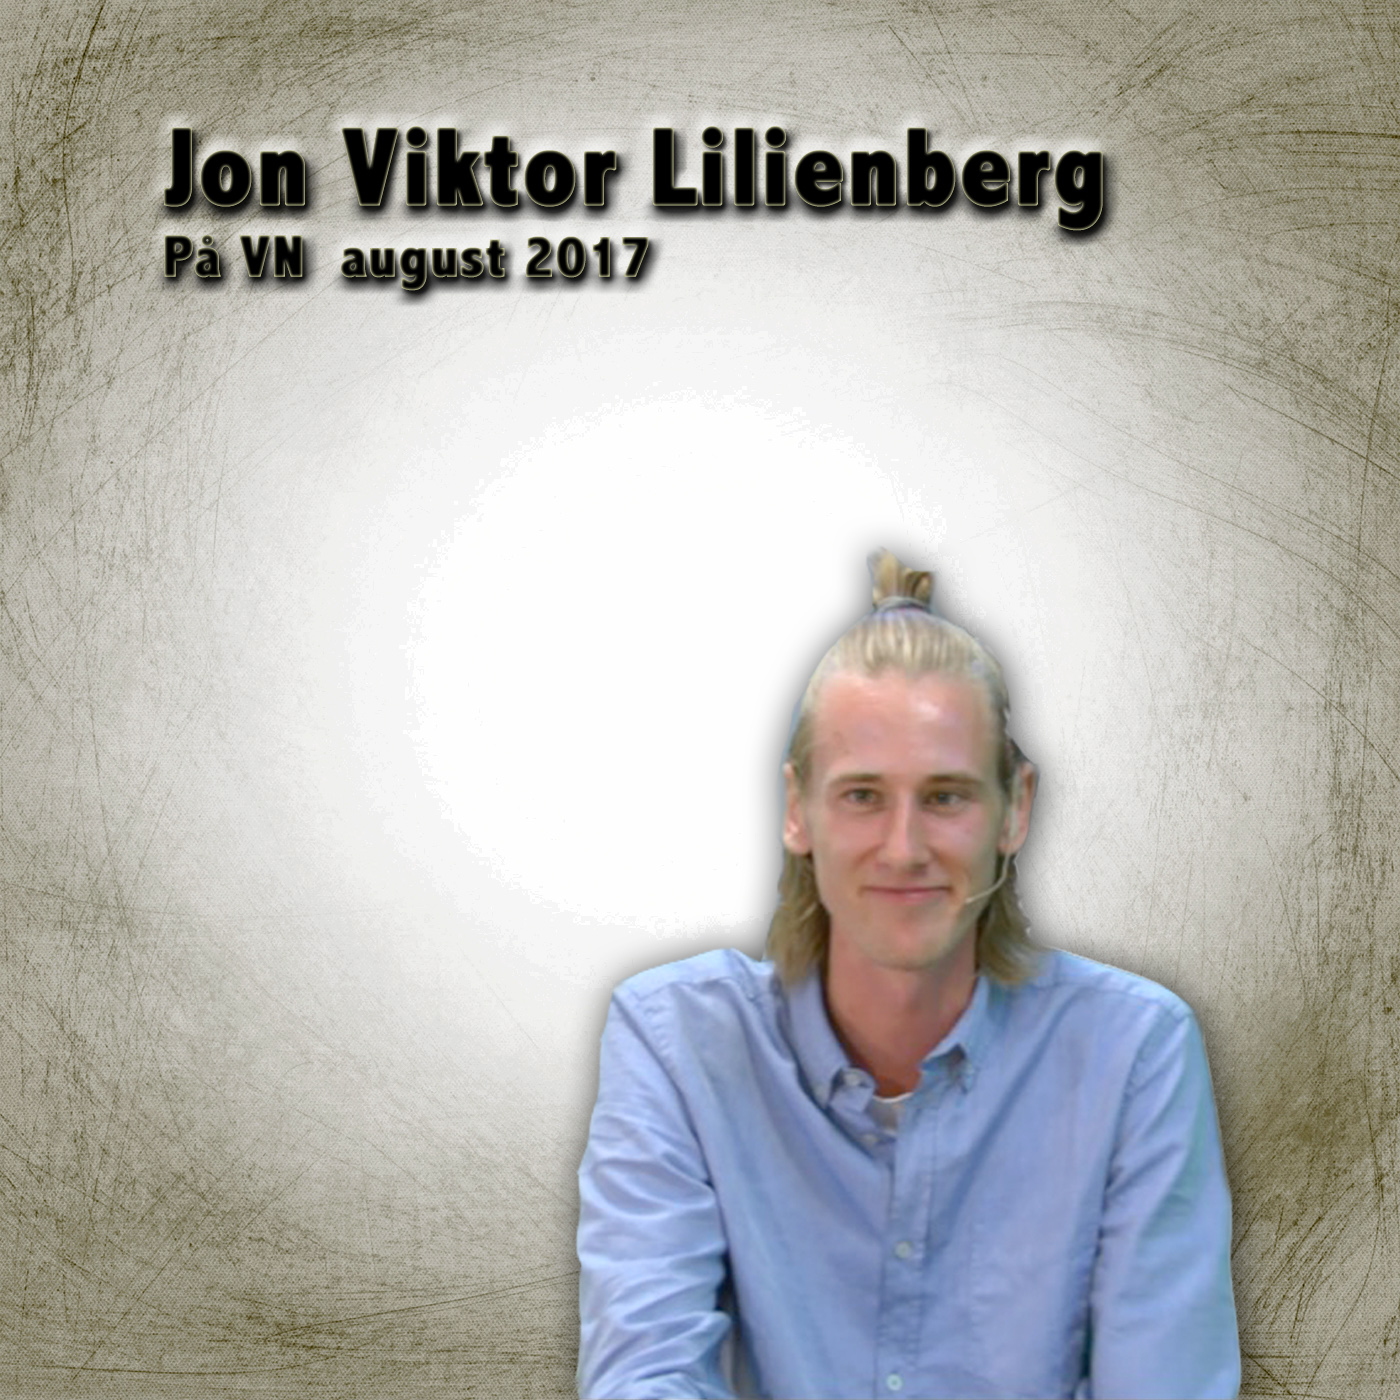 Jon Viktor Lillienberg 